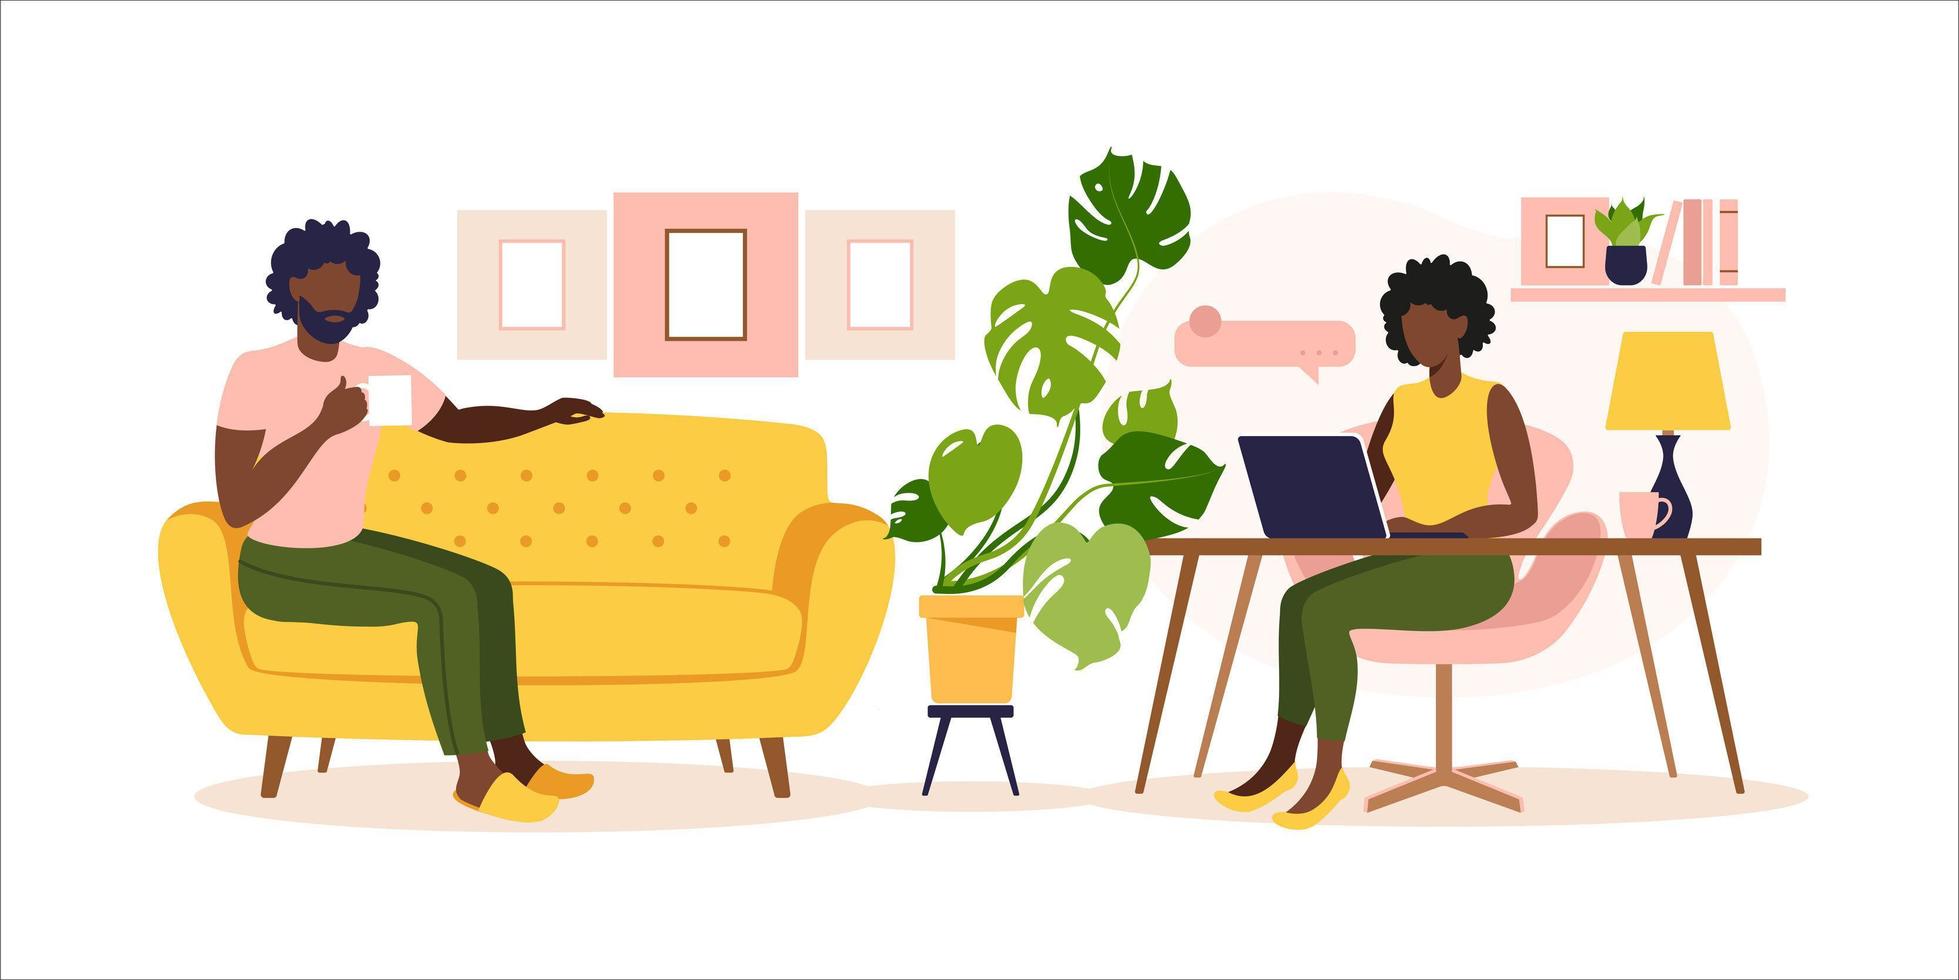 afrikanskt par som arbetar hemma. kvinna sitter vid bordet med laptop. konceptfrilans, onlineutbildning eller arbetssociala medier. jobba hemifrån, distansjobb. platt stil. vektor illustration.